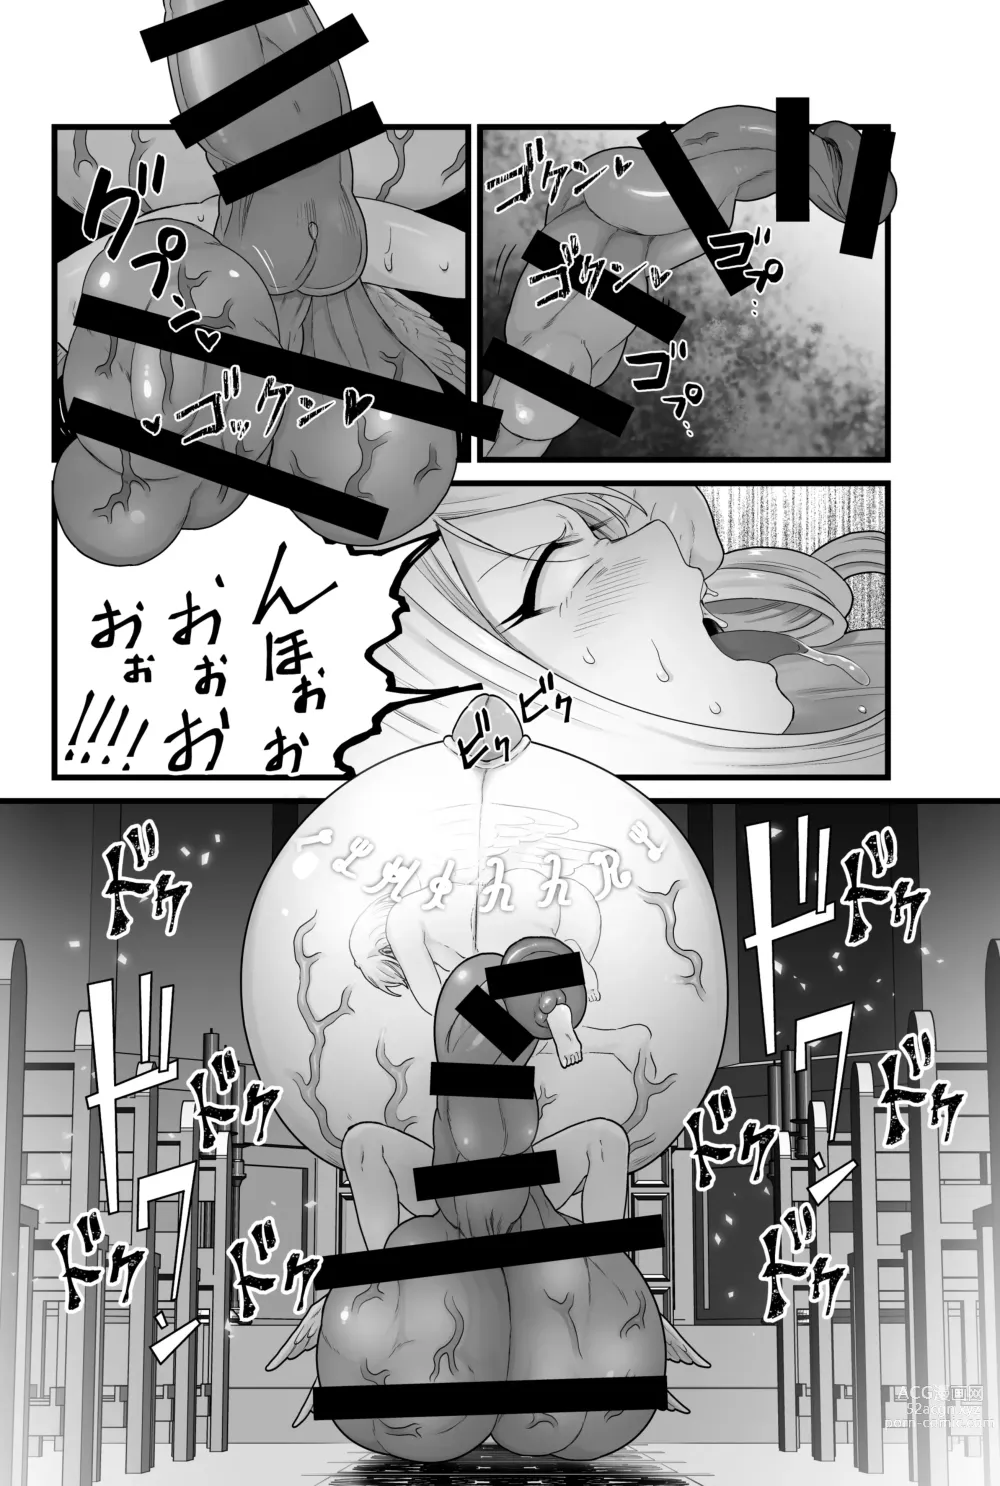 Page 77 of doujinshi Kisei Seijo Siestia